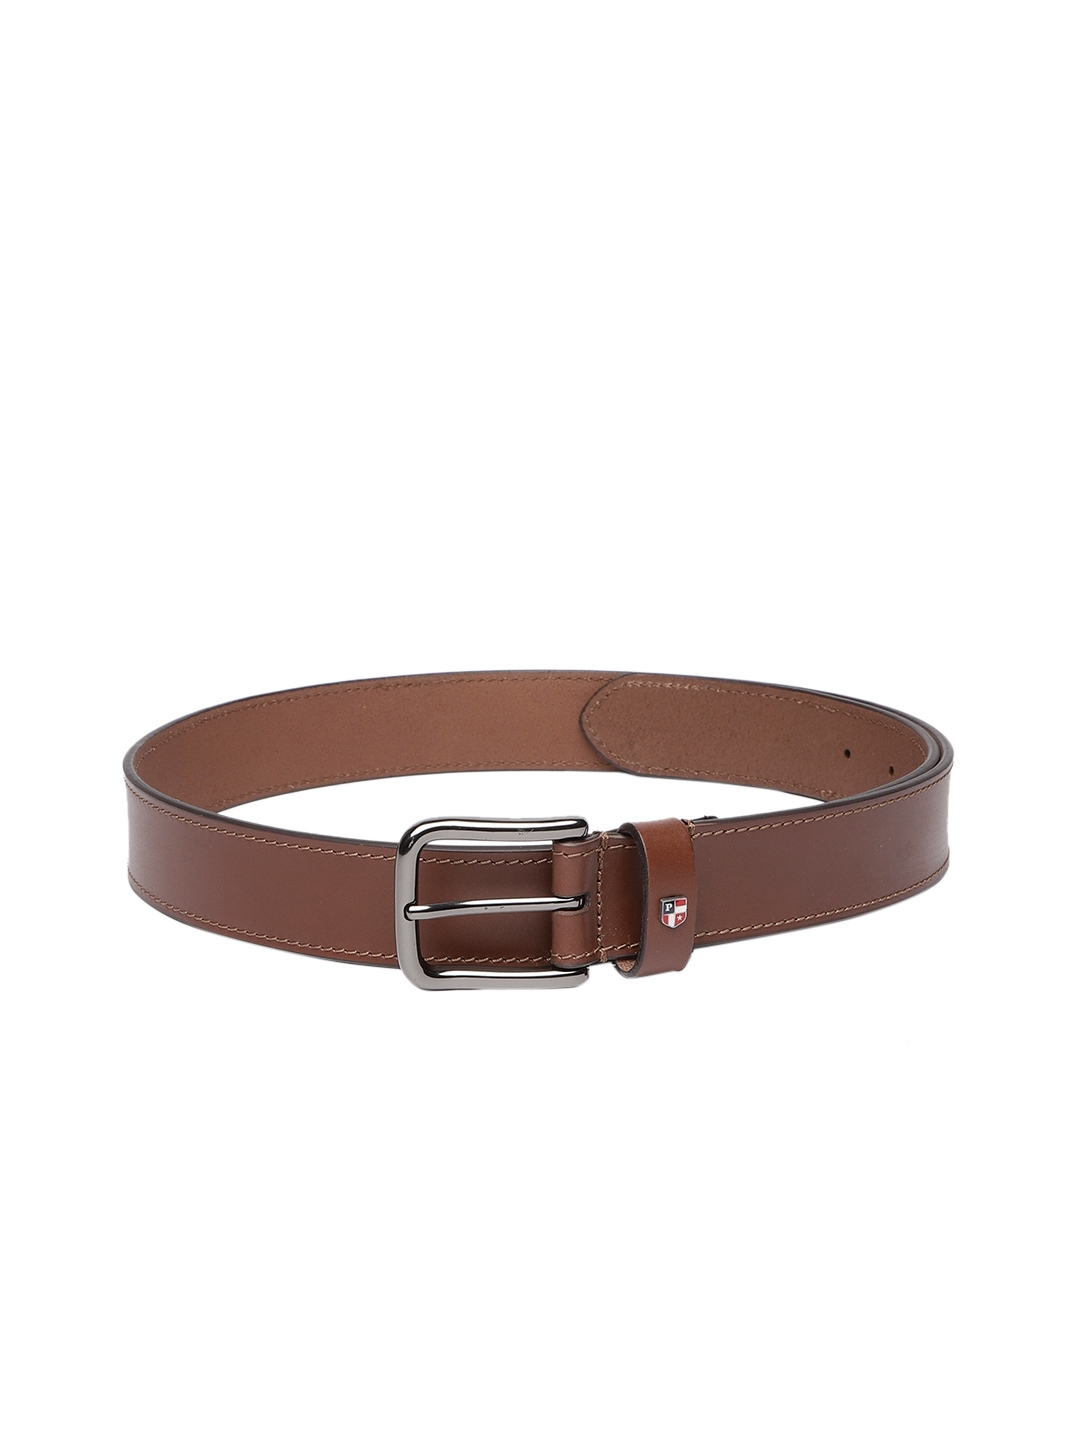 Buy U.S. Polo Assn. Men Brown Solid Leather Belt - Belts for Men ...